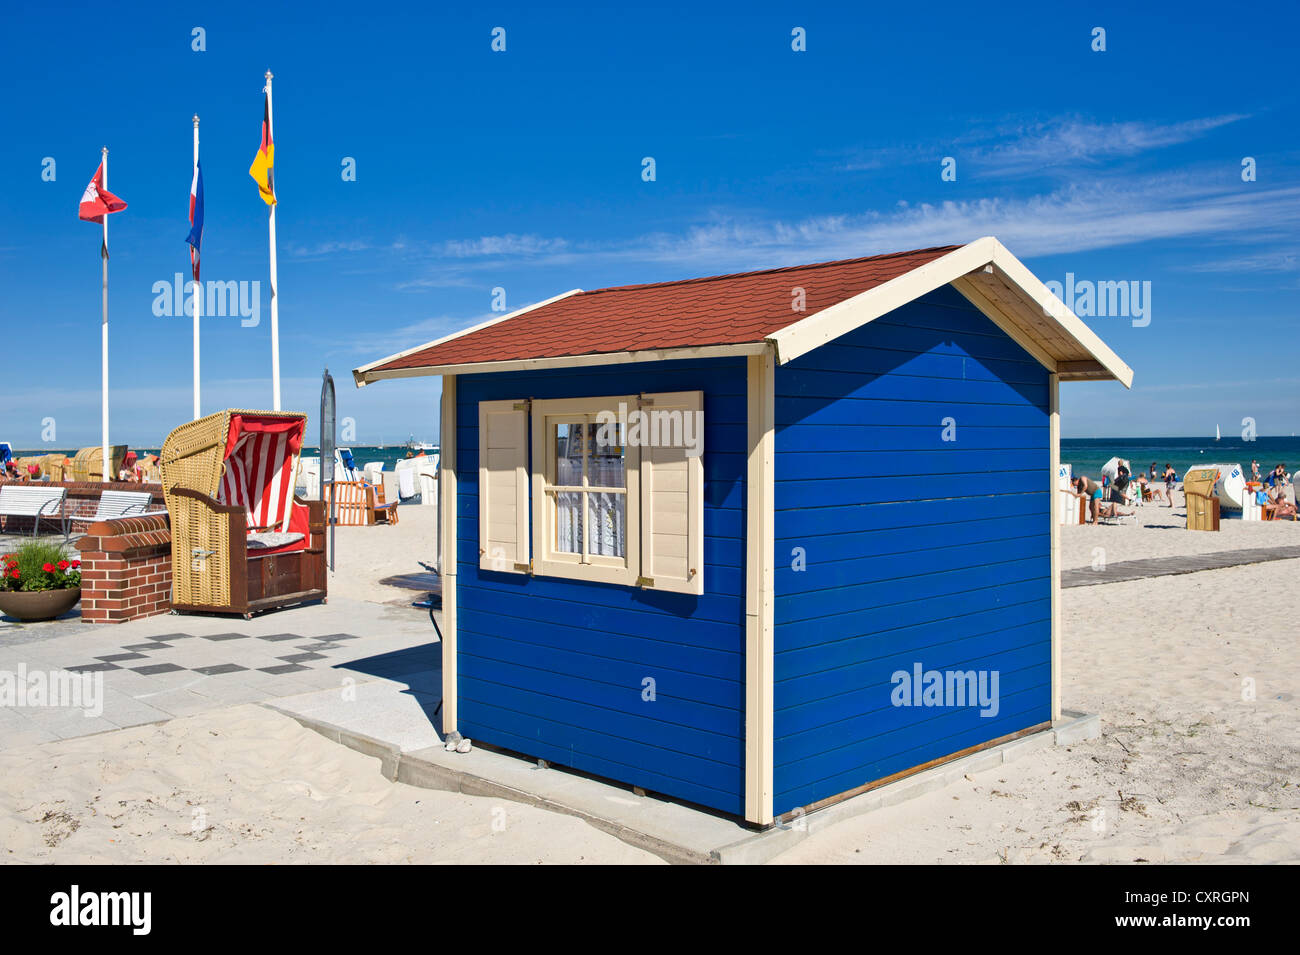 Hut, louer une chaise de plage en osier couvert, plage, Dahme, mer Baltique, Schleswig-Holstein, Allemagne, Europe Banque D'Images